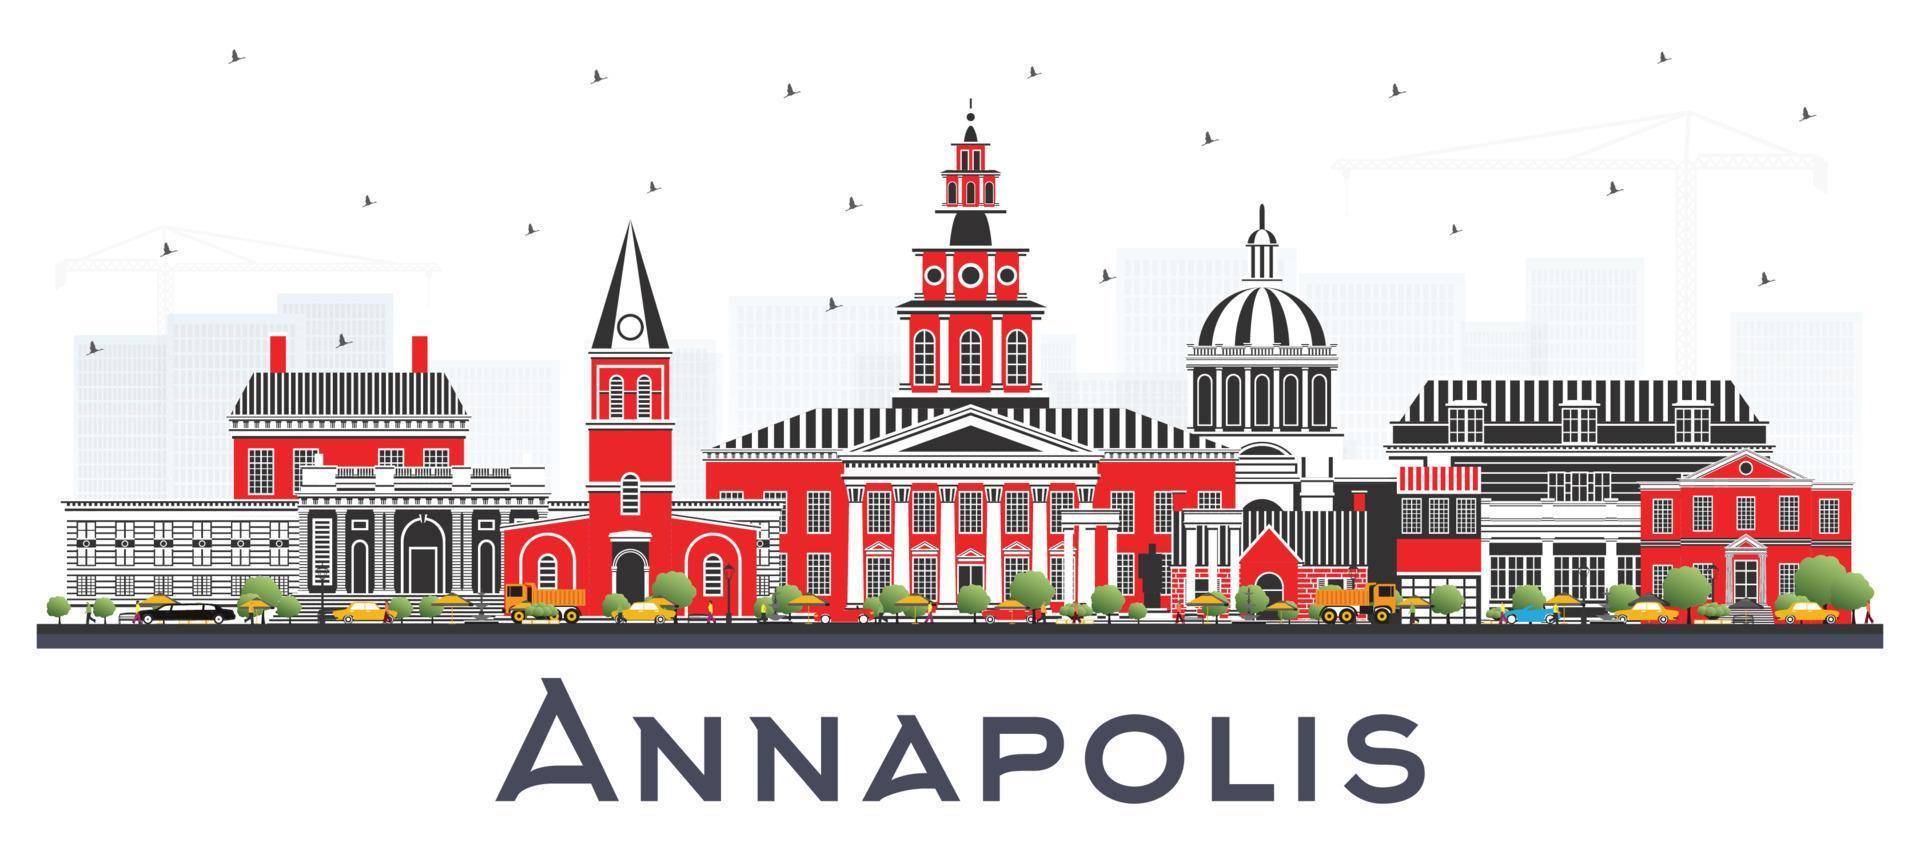 annapolis maryland city skyline mit farbigen gebäuden isoliert auf weiß. vektor